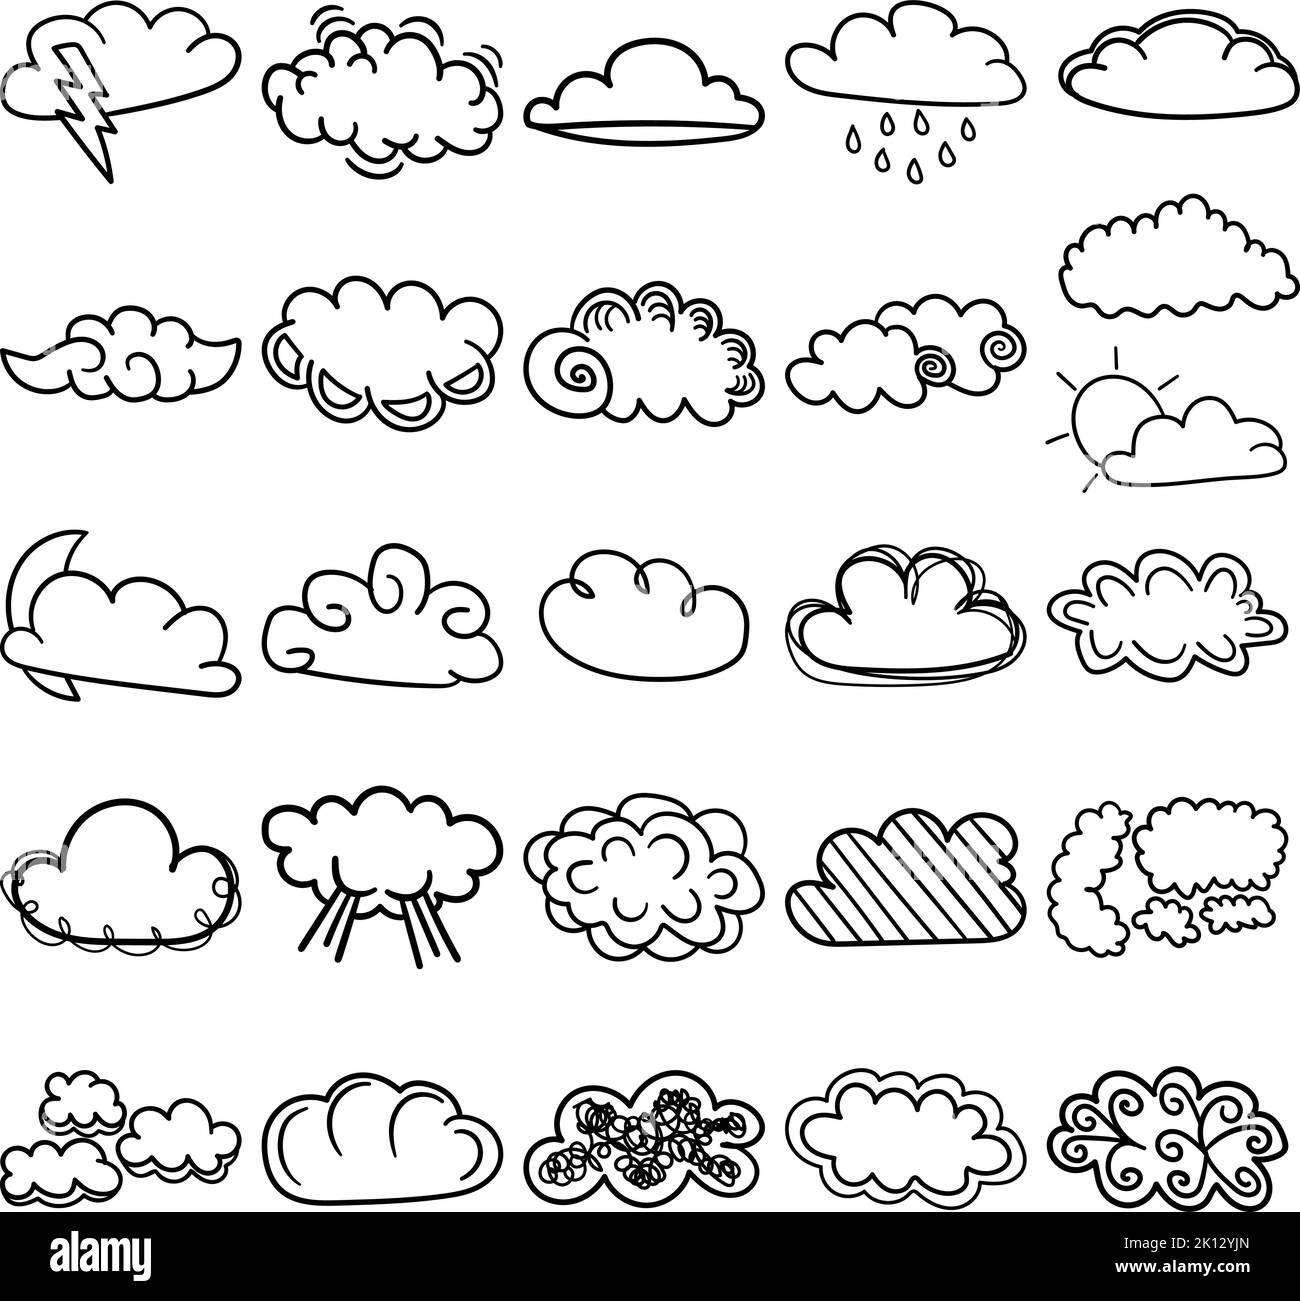 Nuvole disegnate a mano Doodle Line Art Outline Set contenente nuvole, nuvole, nebbia, nebbia, soffio, smog, fumo, vapore, vapore, velo, bilow, dimmness, film, nebbia Illustrazione Vettoriale